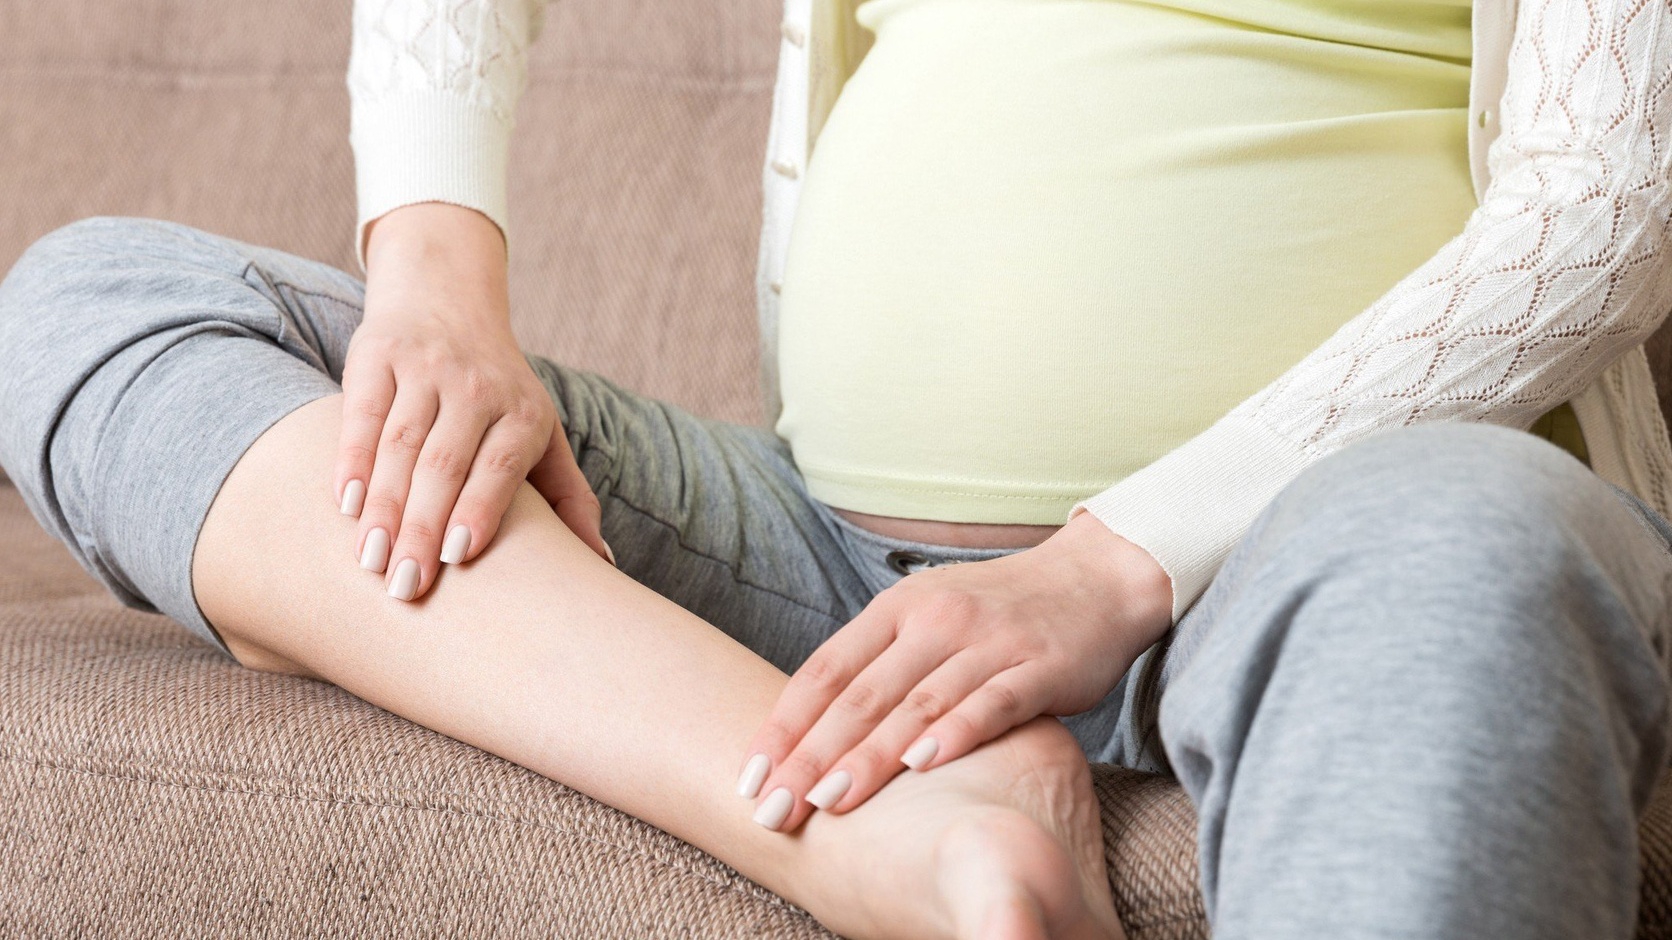 Vì sao bà bầu thường bị đau bắp chân trong 3 tháng cuối thai kỳ?
